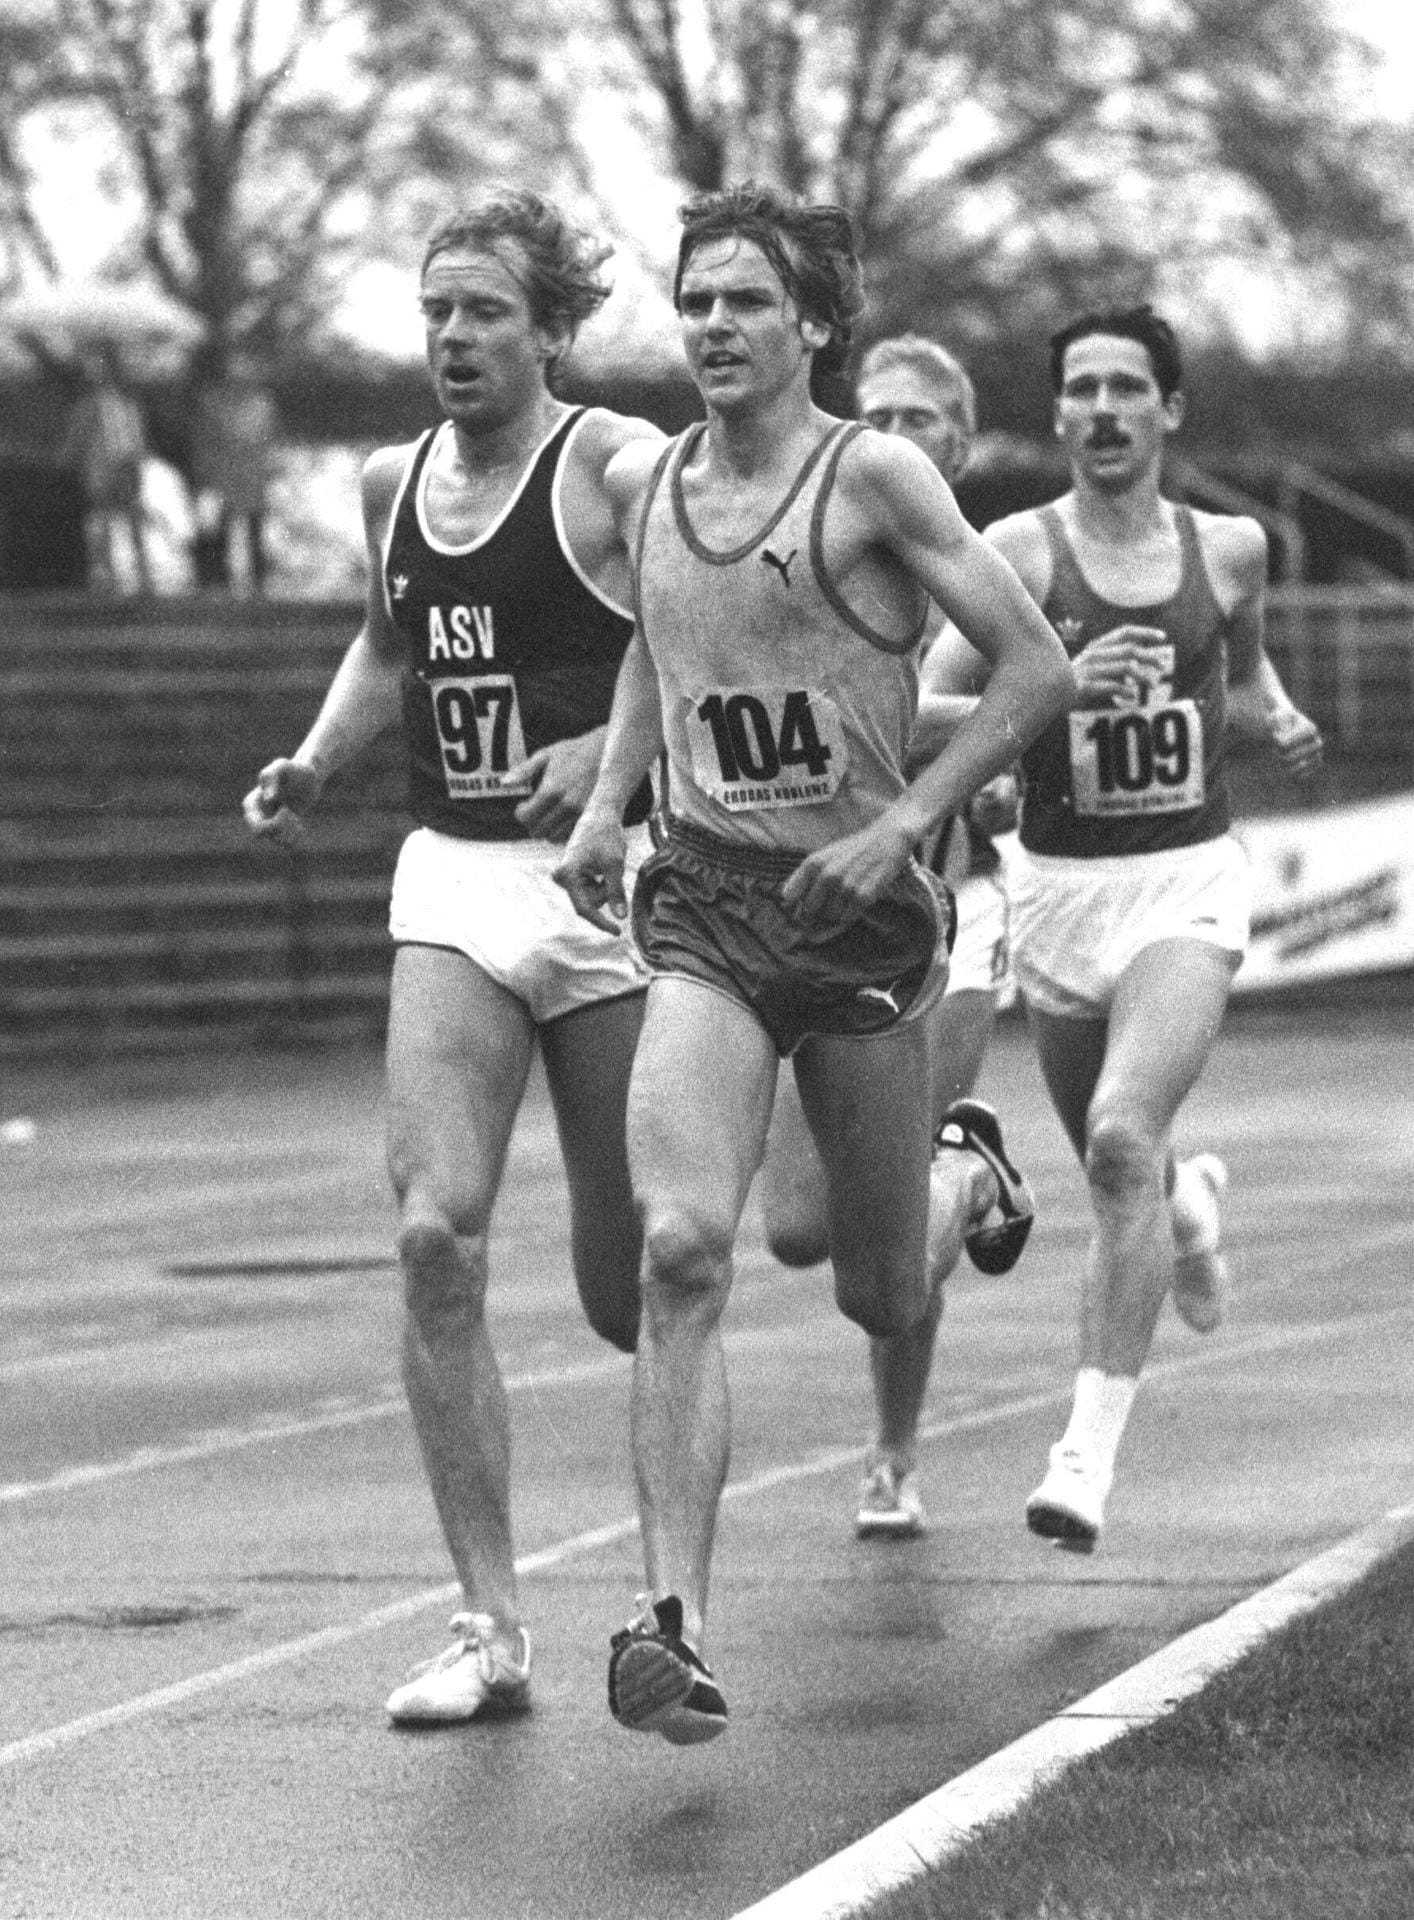 Wolf-Dieter Poschmann trat nicht als Journalist das erste Mal in die Öffentlichkeit, sondern als Sportler. Der gebürtige Kölner war ein Mittelstreckenläufer, nahm sogar an den Deutschen Meisterschaften und an internationalen Wettbewerben teil. Für die Weltspitze reichte es allerdings nicht.